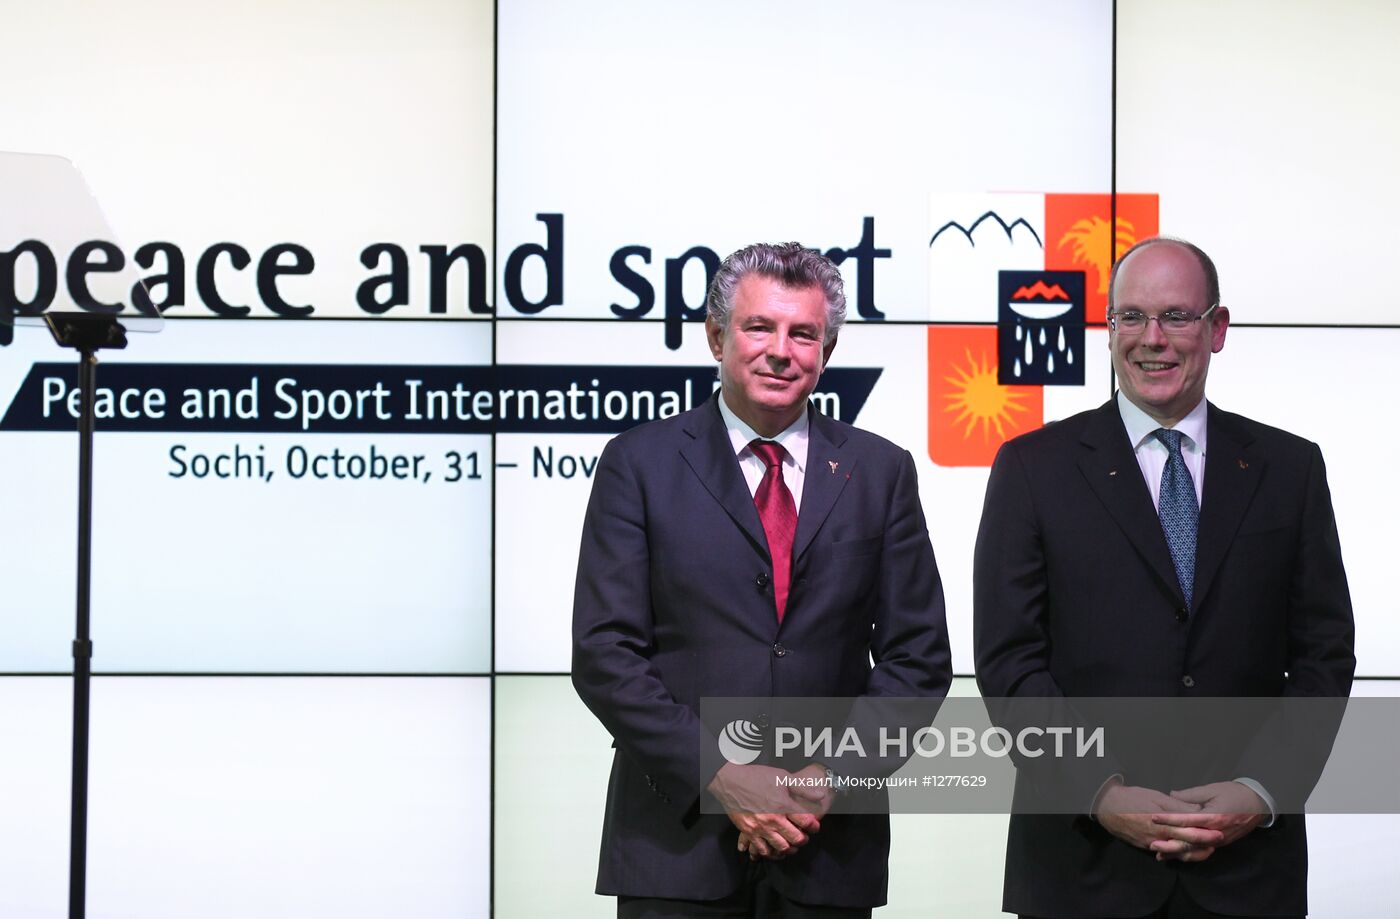 Открытие международного форума "Мир и Спорт" в Красной Поляне